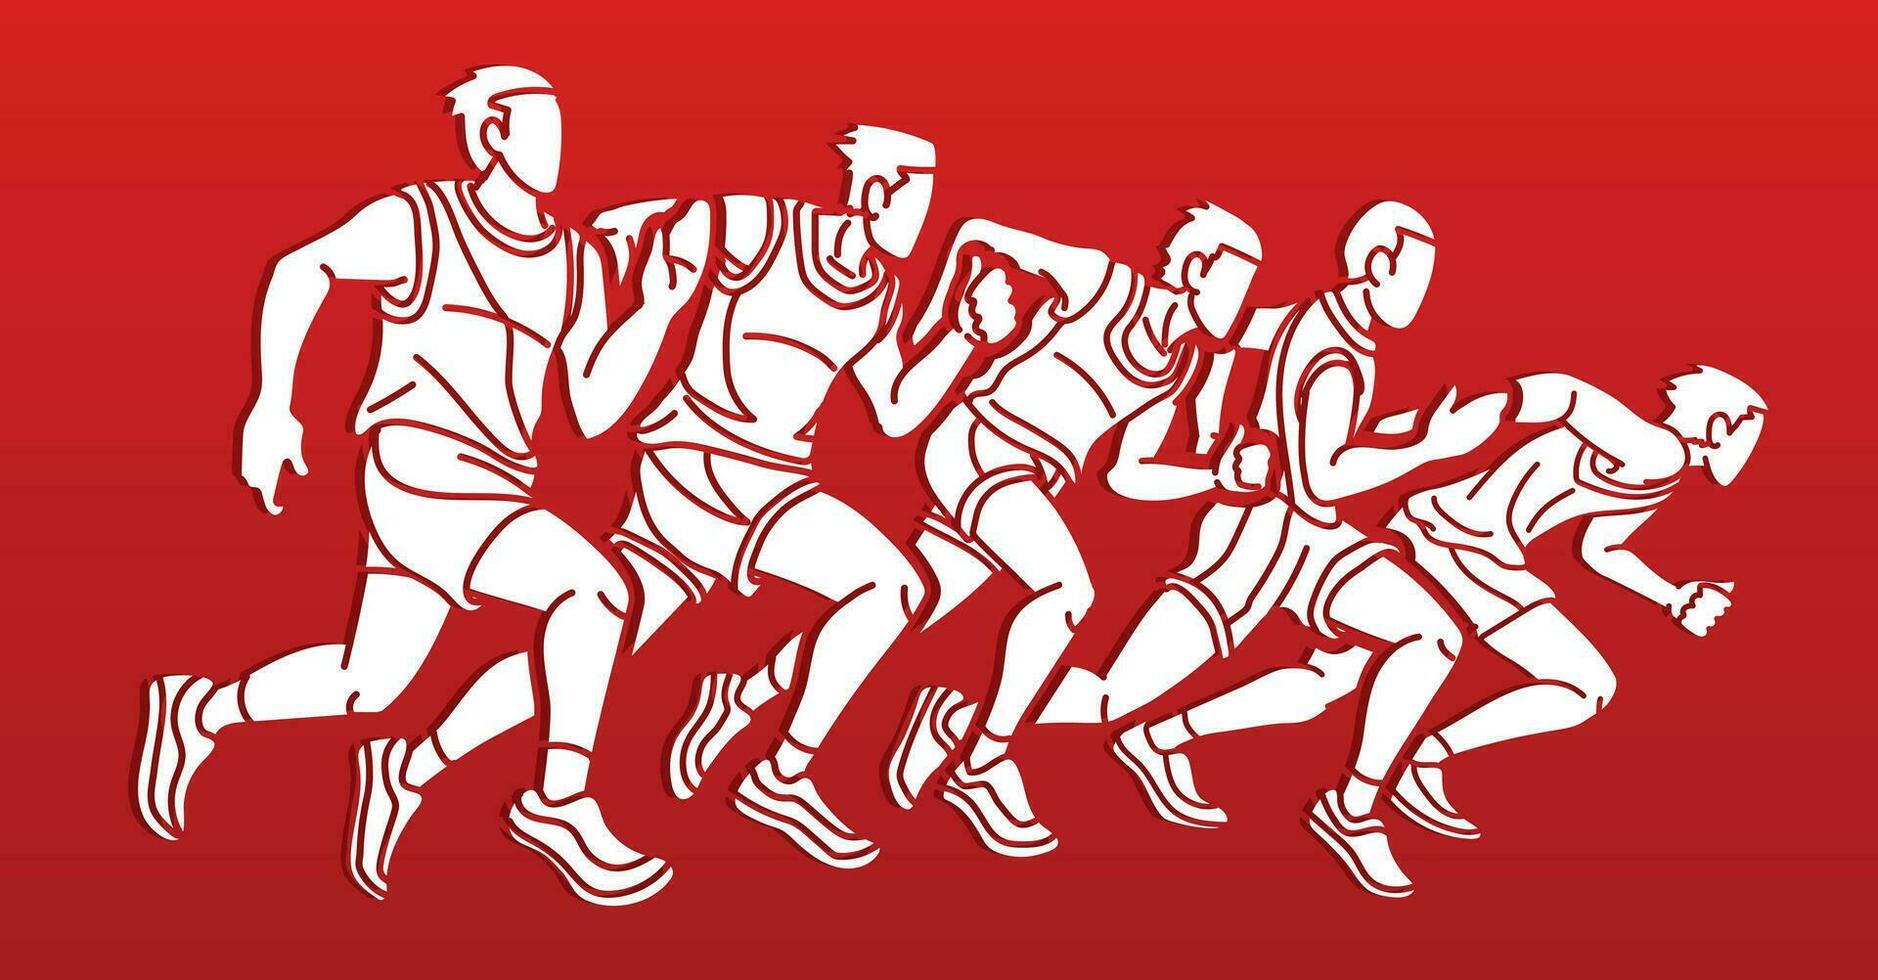 silueta grupo de personas comienzo corriendo hombres corredor juntos maratón corriendo vector